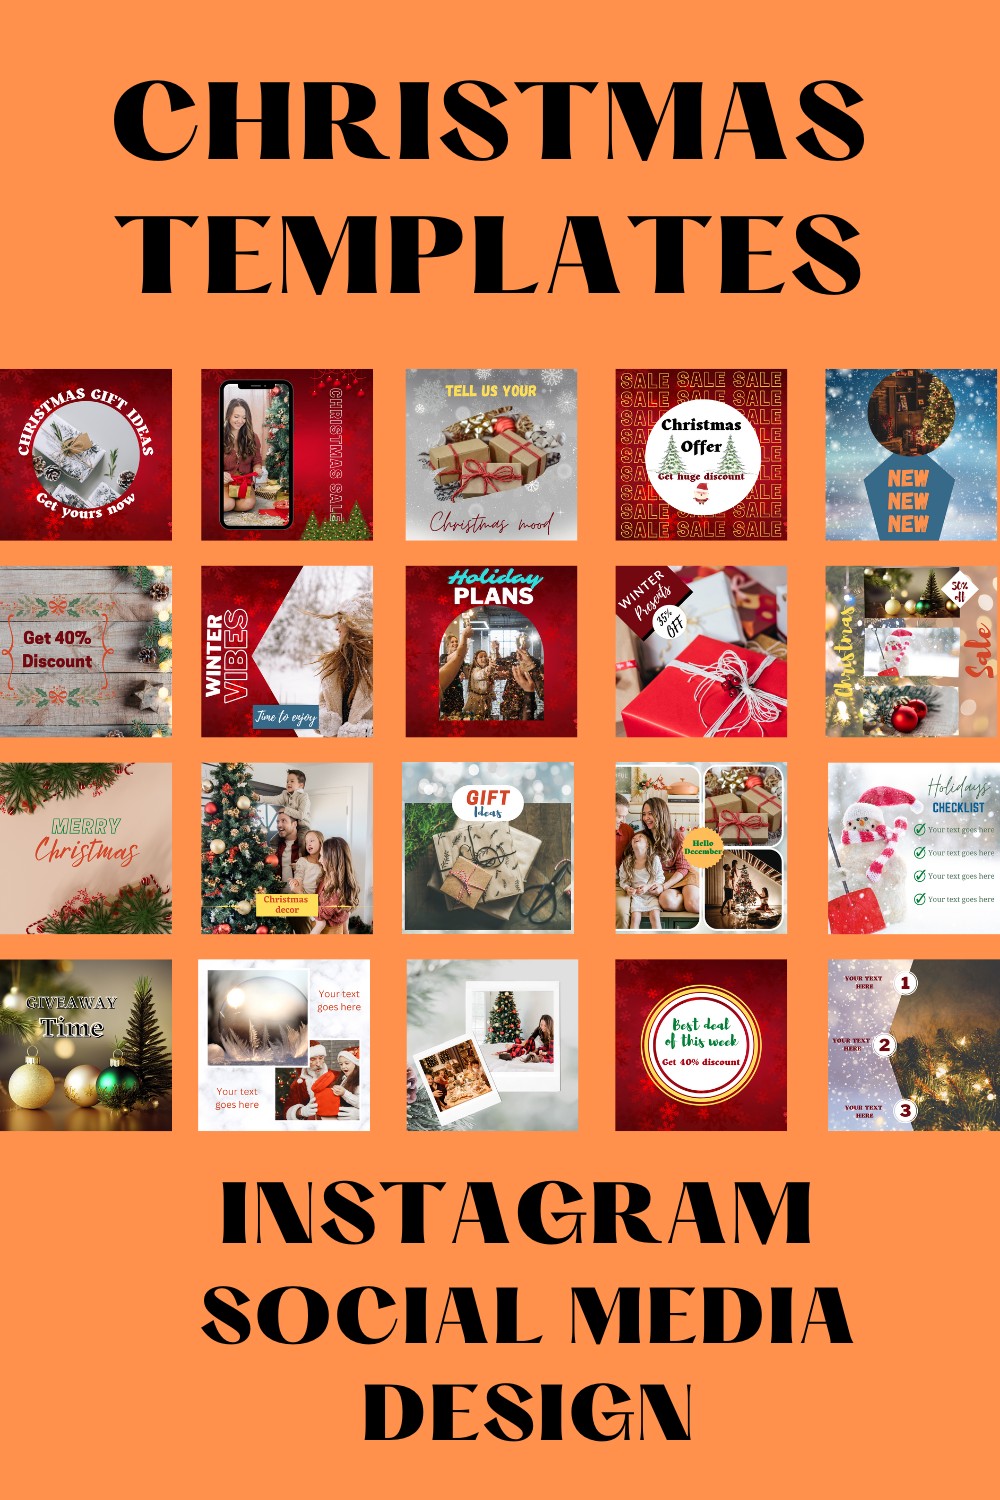 Christmas Instagram Social Media Design pinterest image.